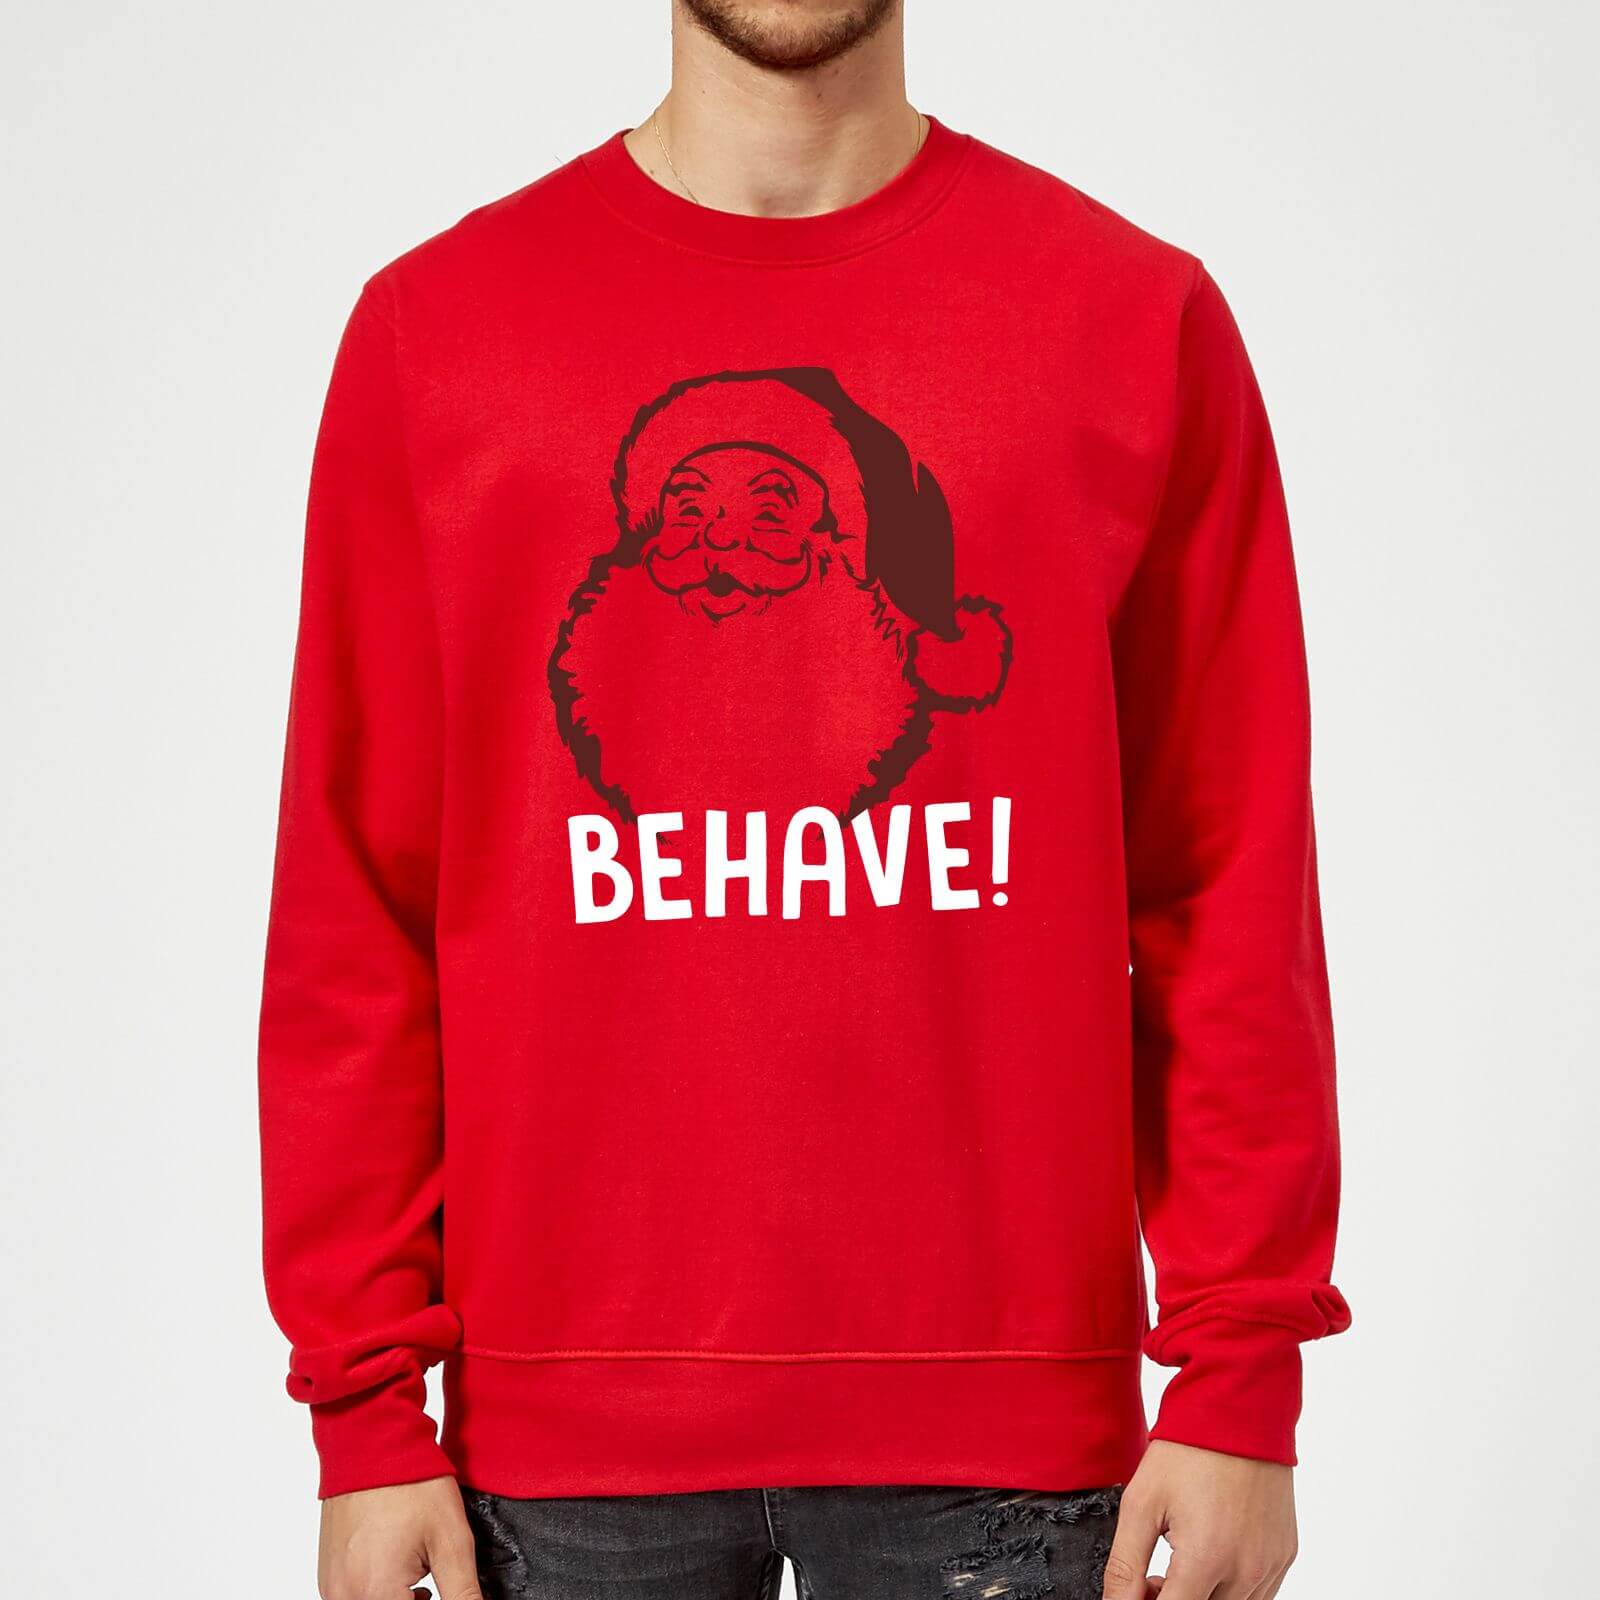 Behave! Sweatshirt - Red - M - Red